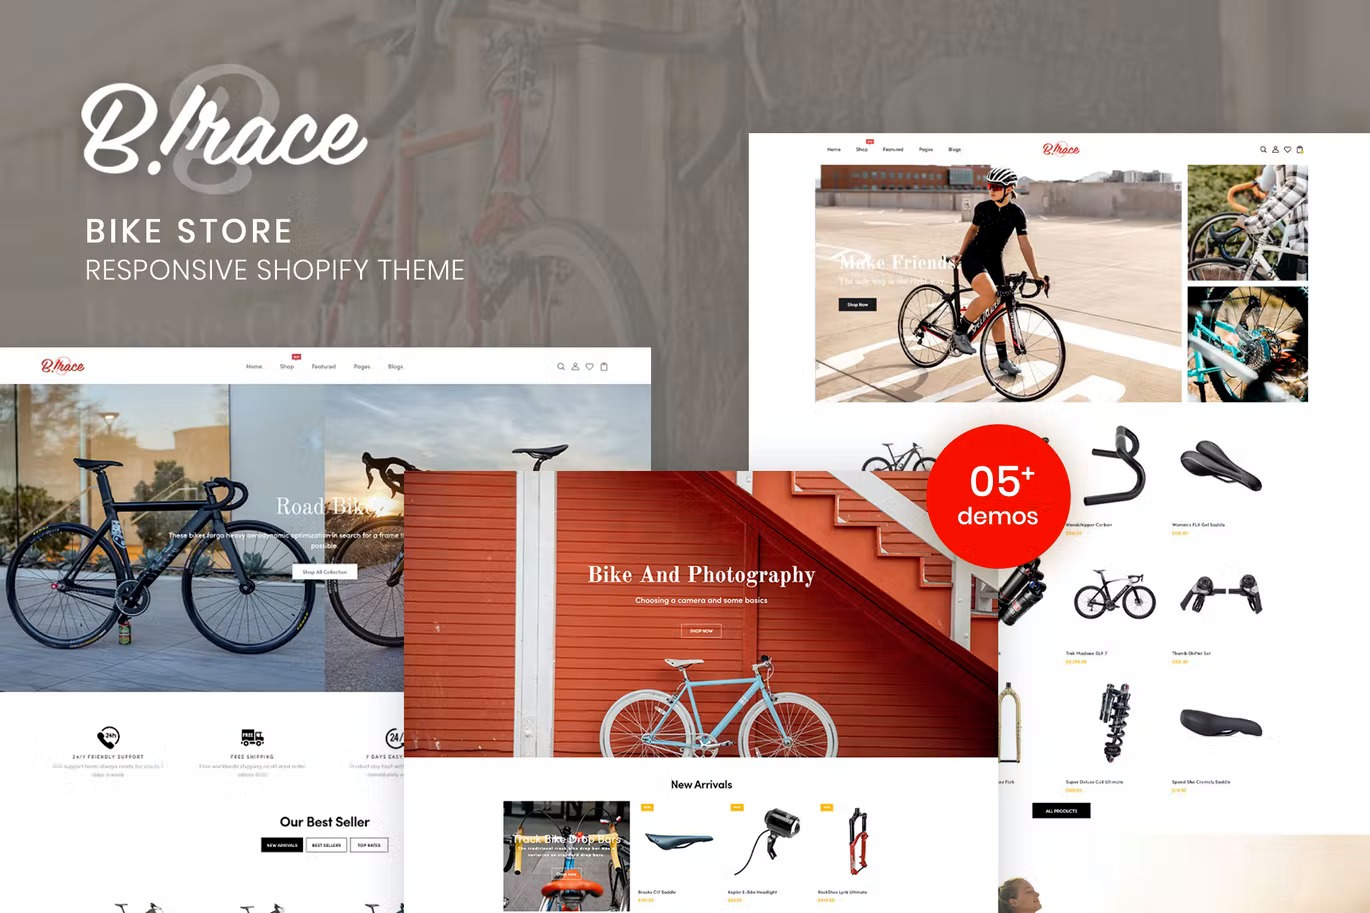 Birace- Bike Store Responsive Shopify Theme